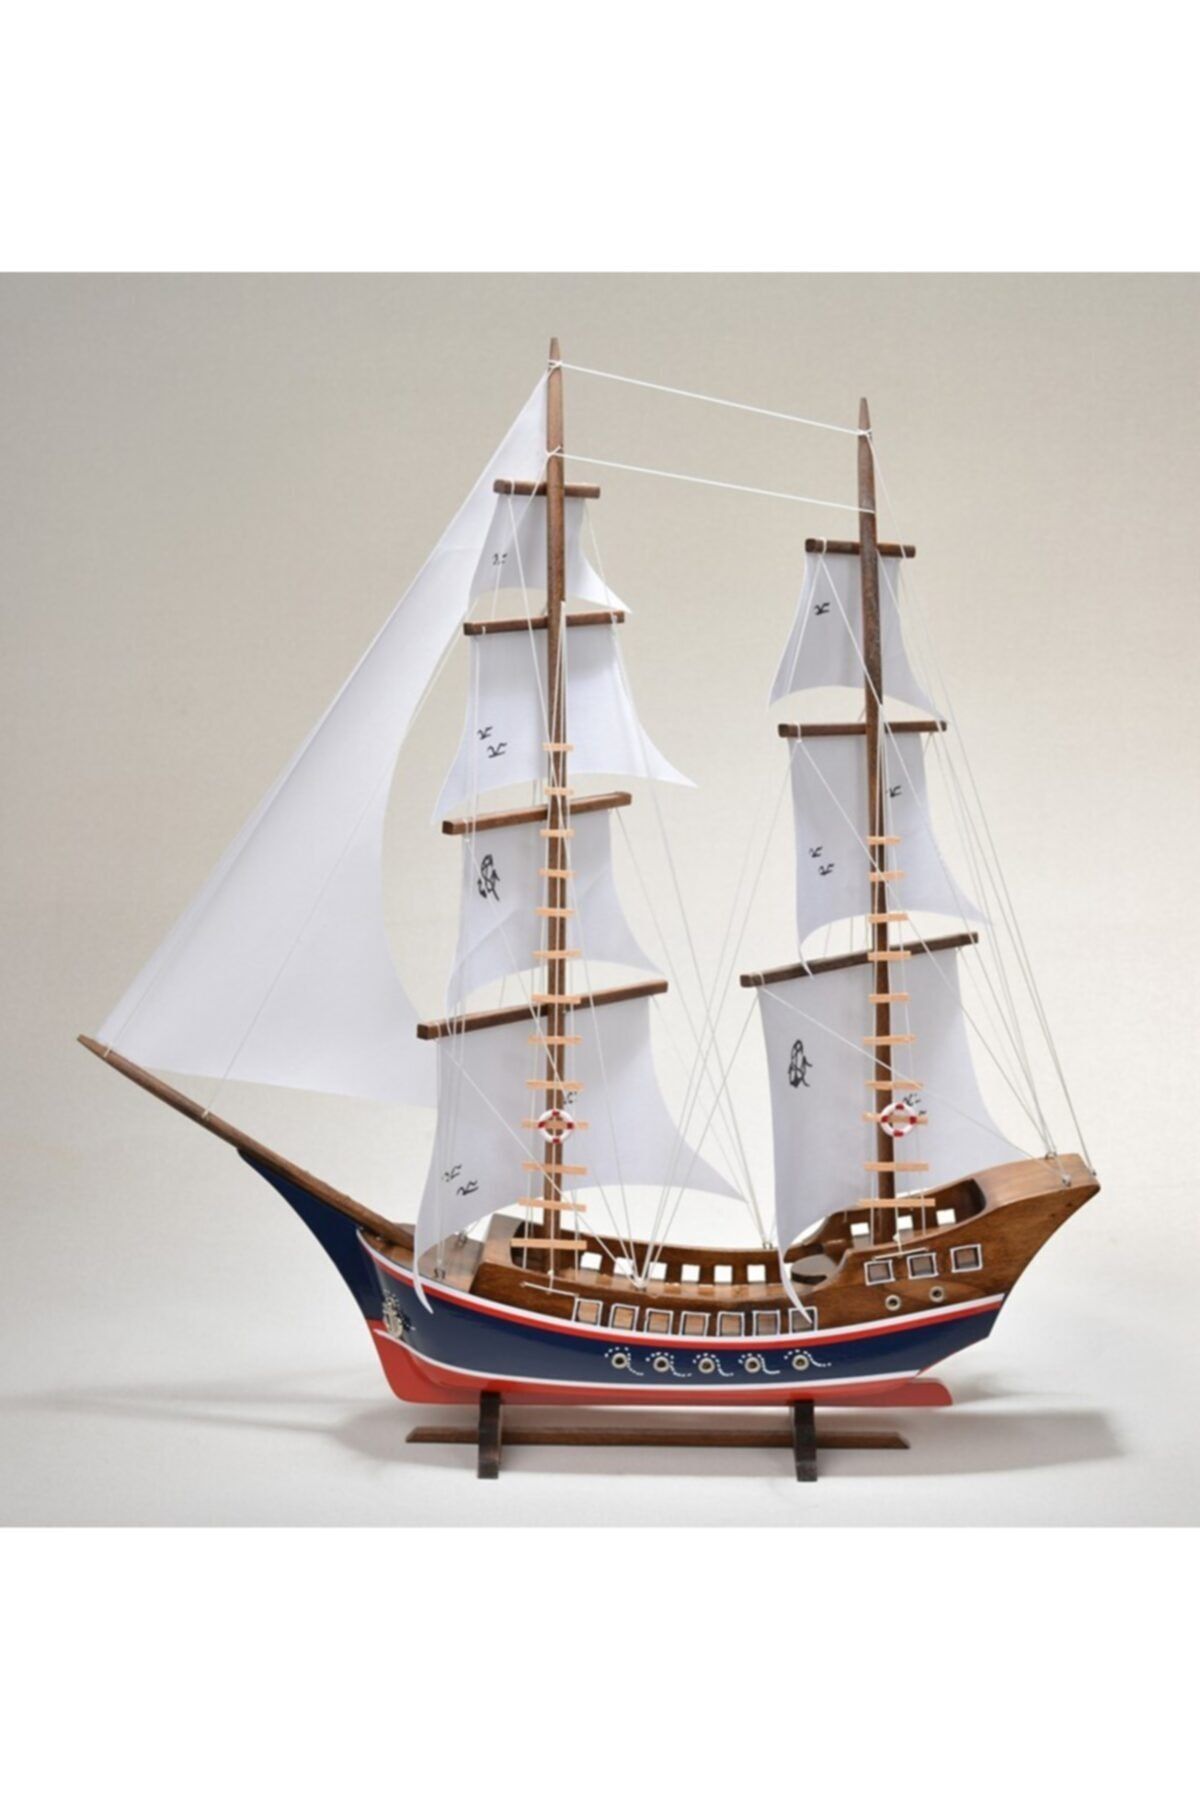 Genel Markalar Ahşap Bez Yelkenli Kalyon Gemi Modeli - Ağaç Tekne Yat Kotra Maketi